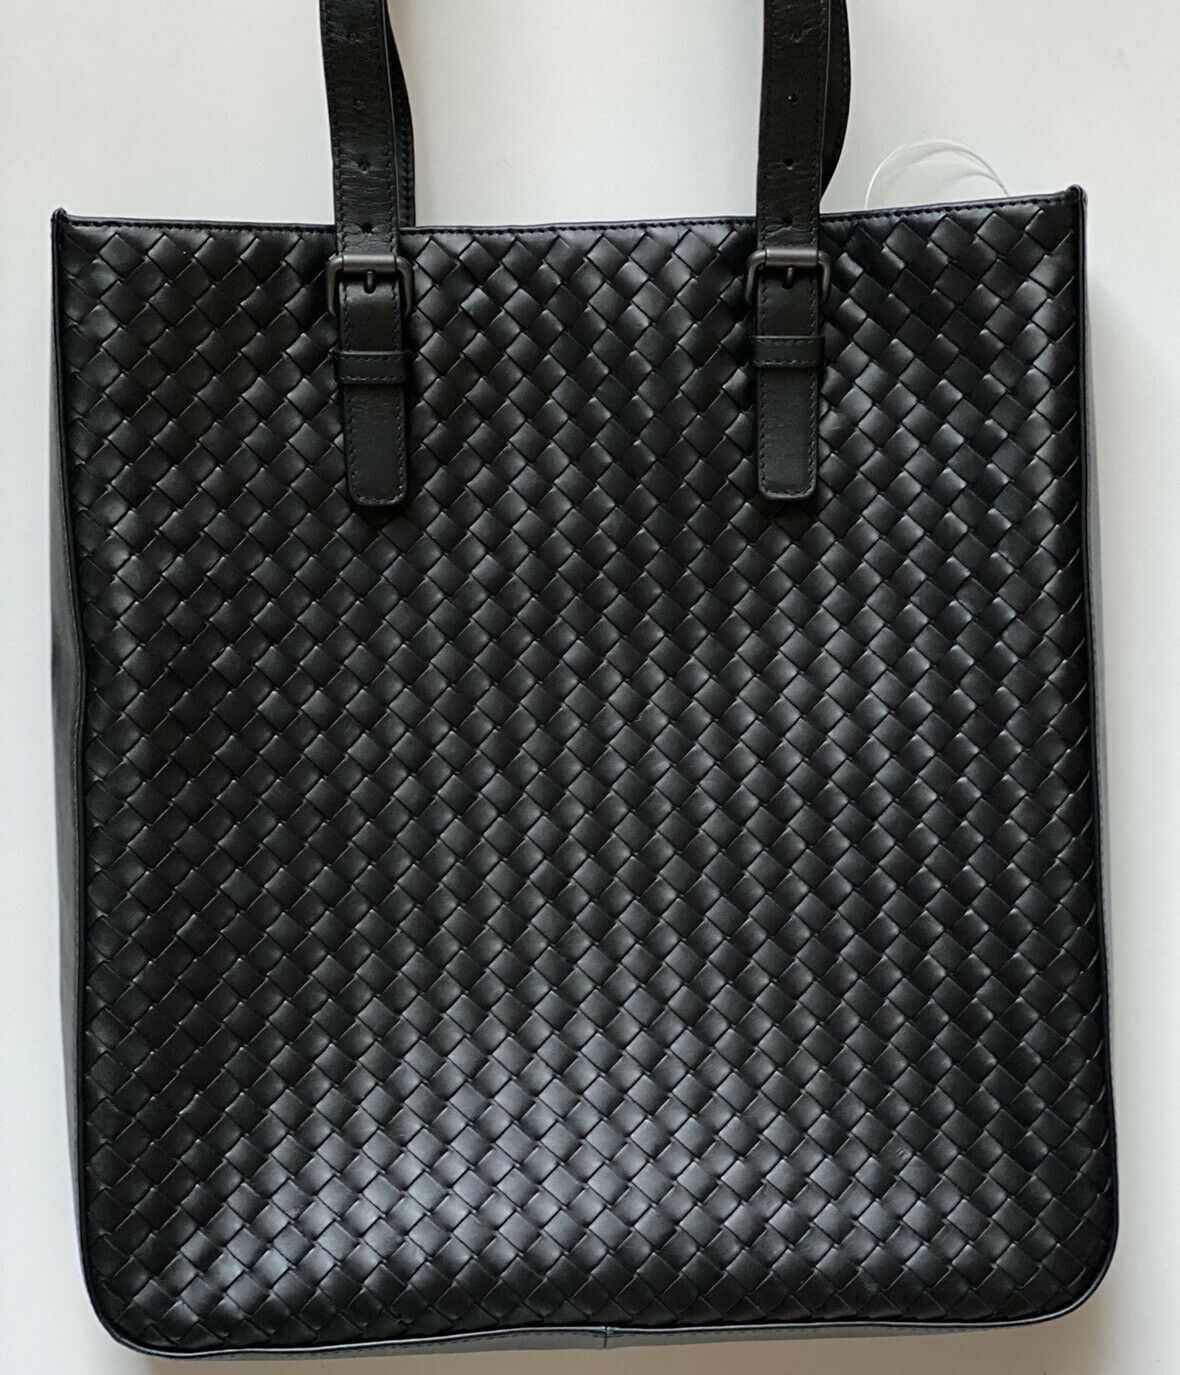 NWT Bottega Veneta Черная кожаная сумка наппа Intrecciato Черная большая сумка, сделано в Италии 